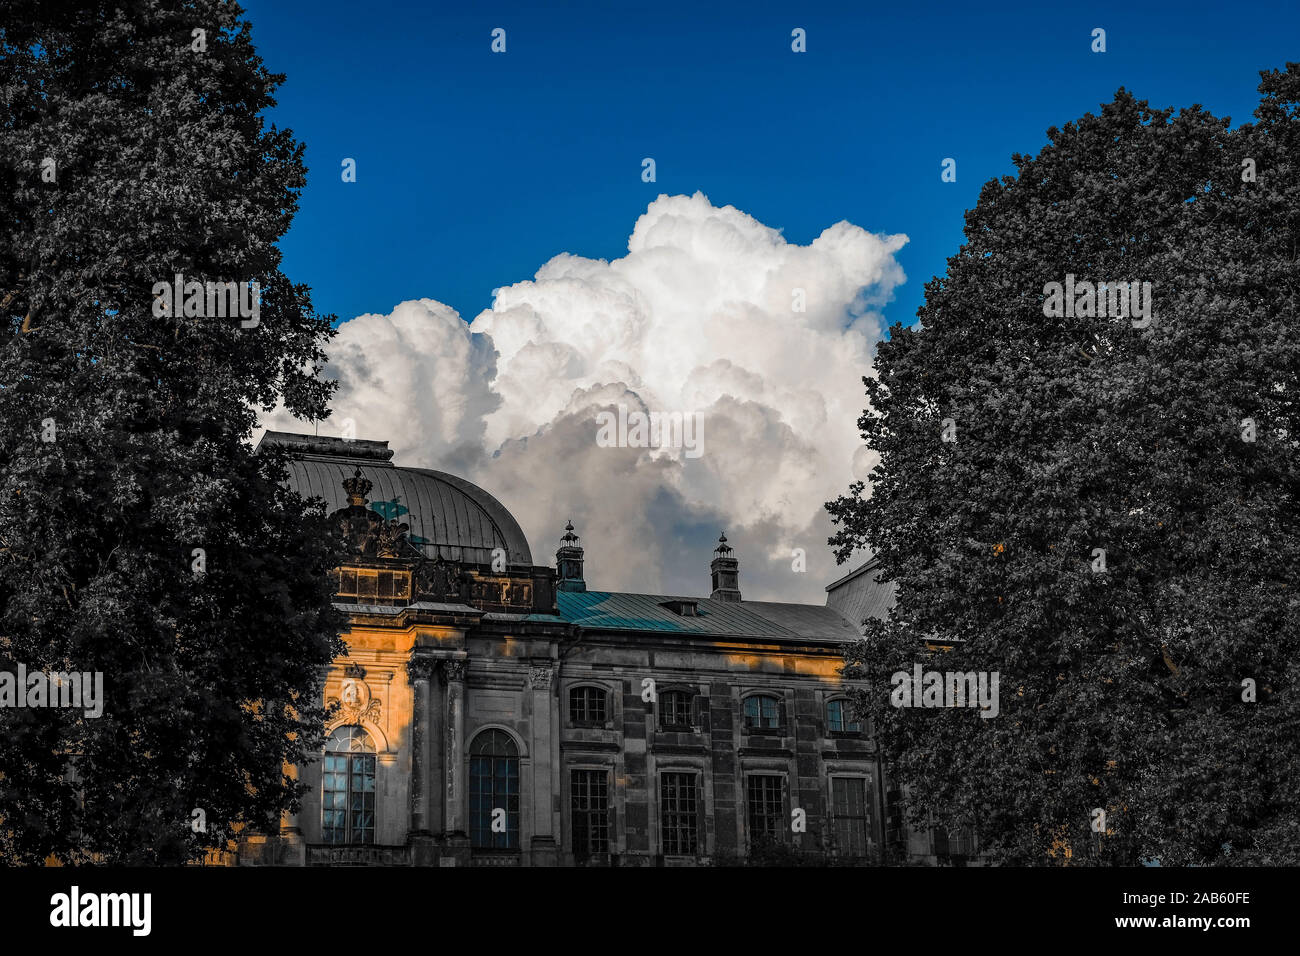 La formation de nuages cumulus blanc dominant dans un beau ciel bleu sur la façade bombée d'un bâtiment historique entouré par les arbres verts feuillus Banque D'Images